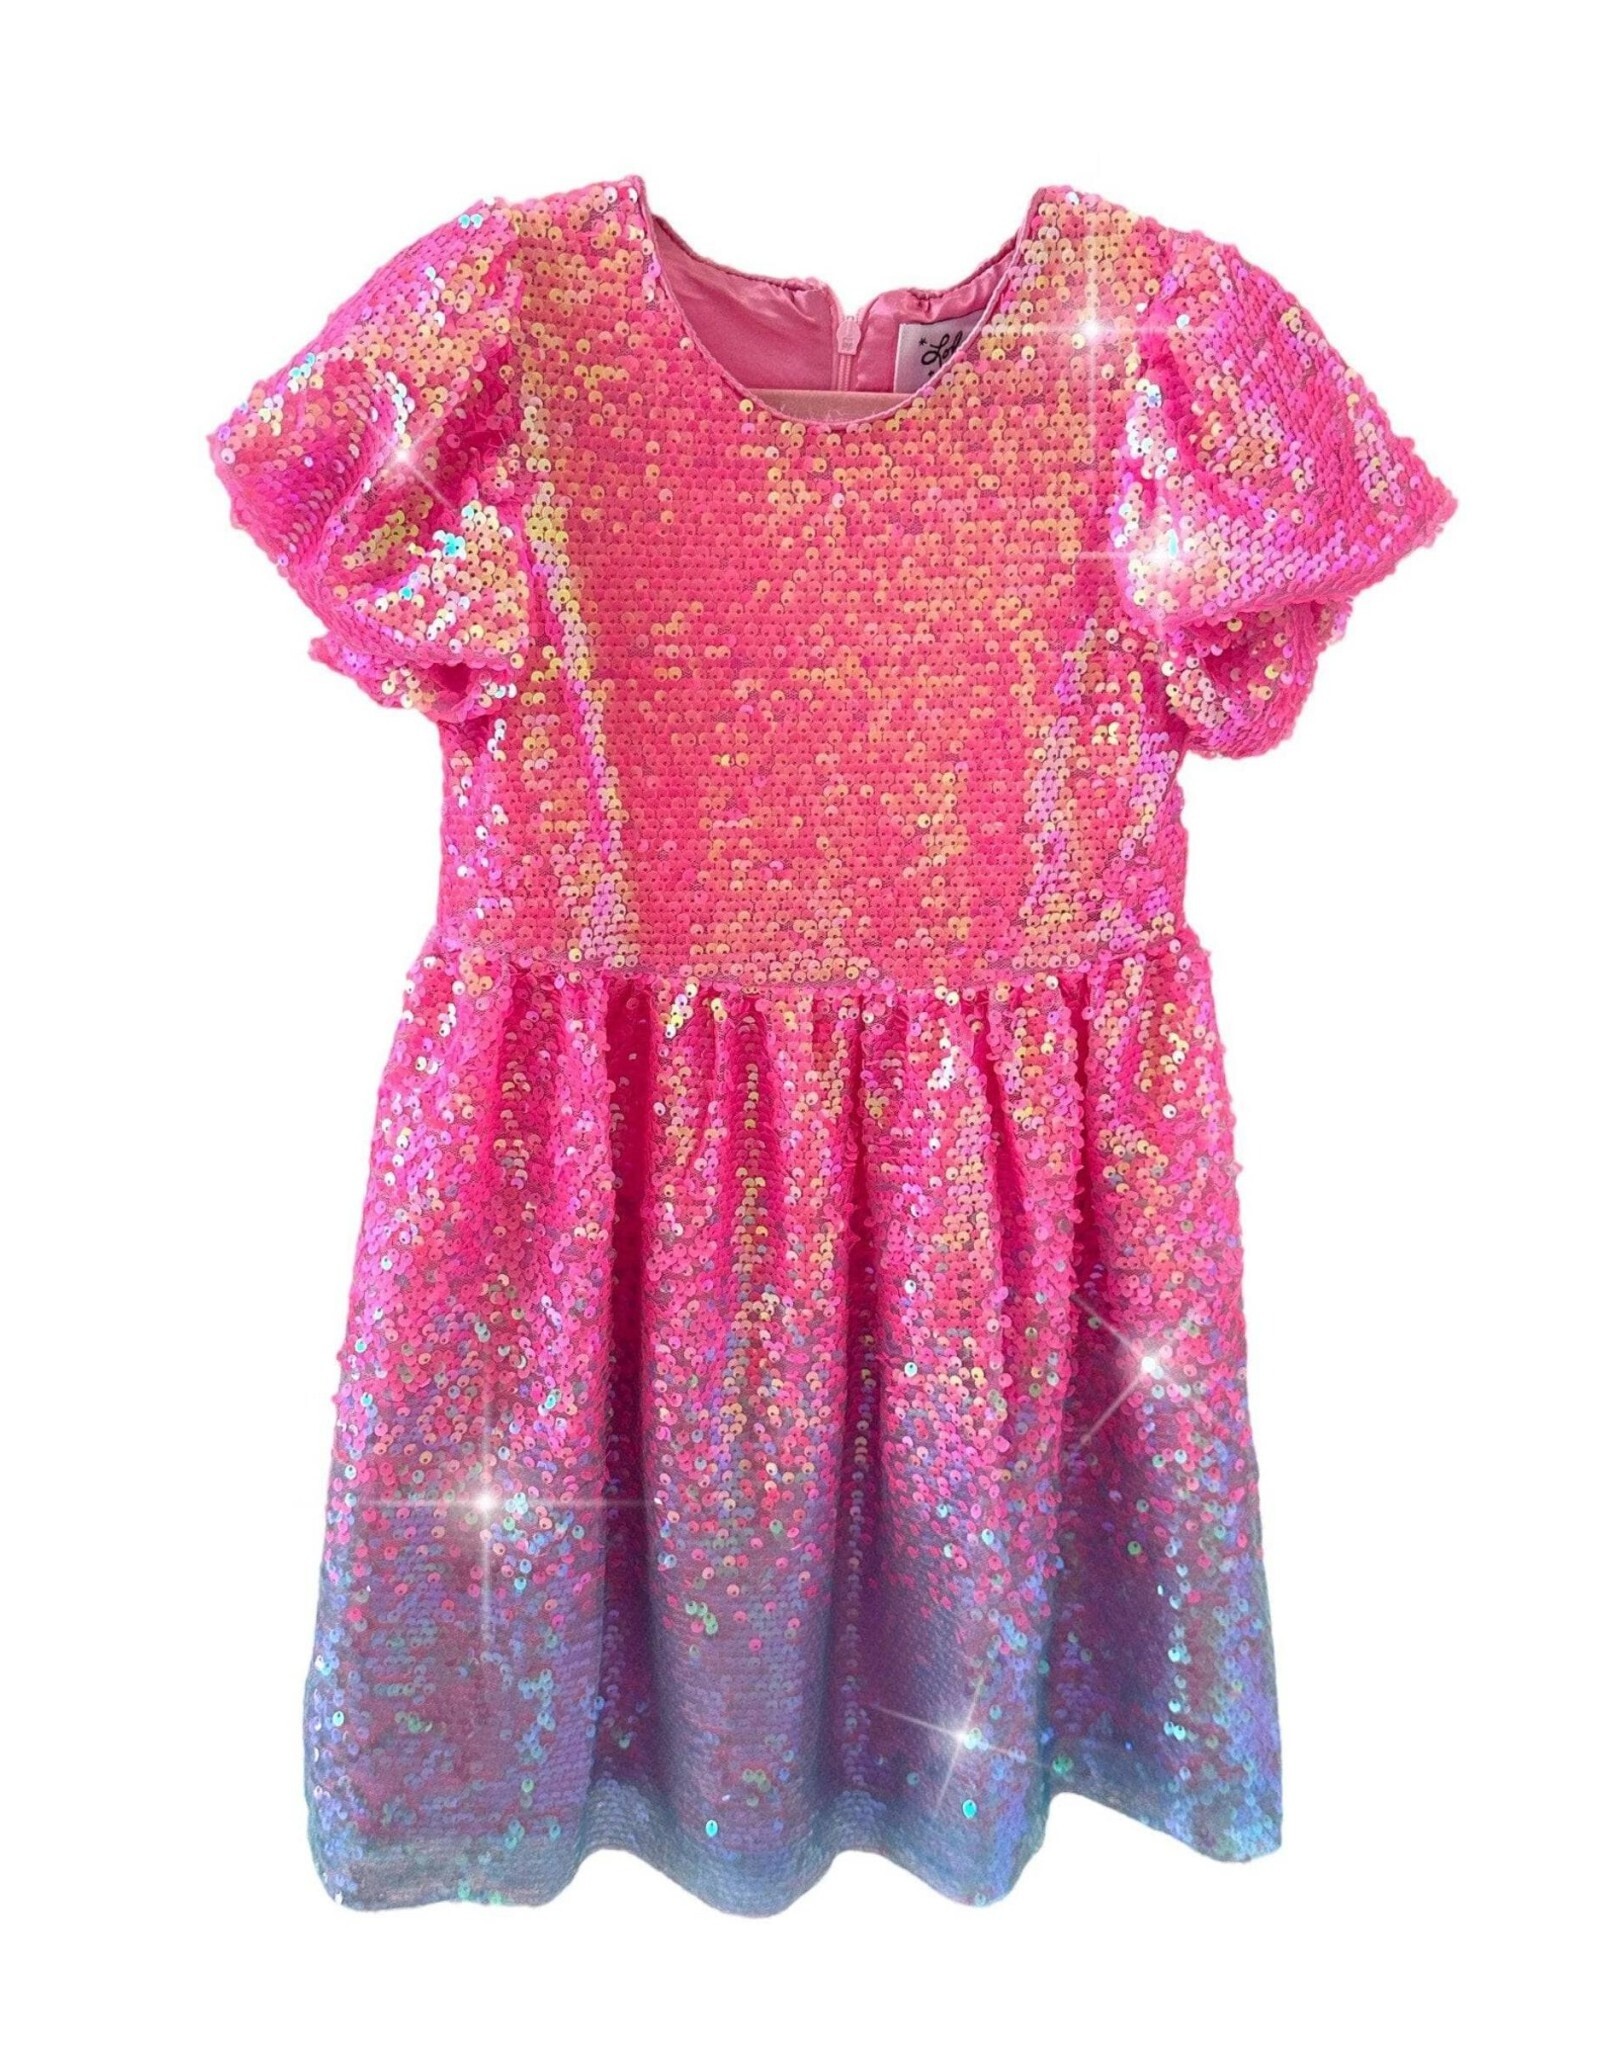 LATB Shimmer Sequin Dress